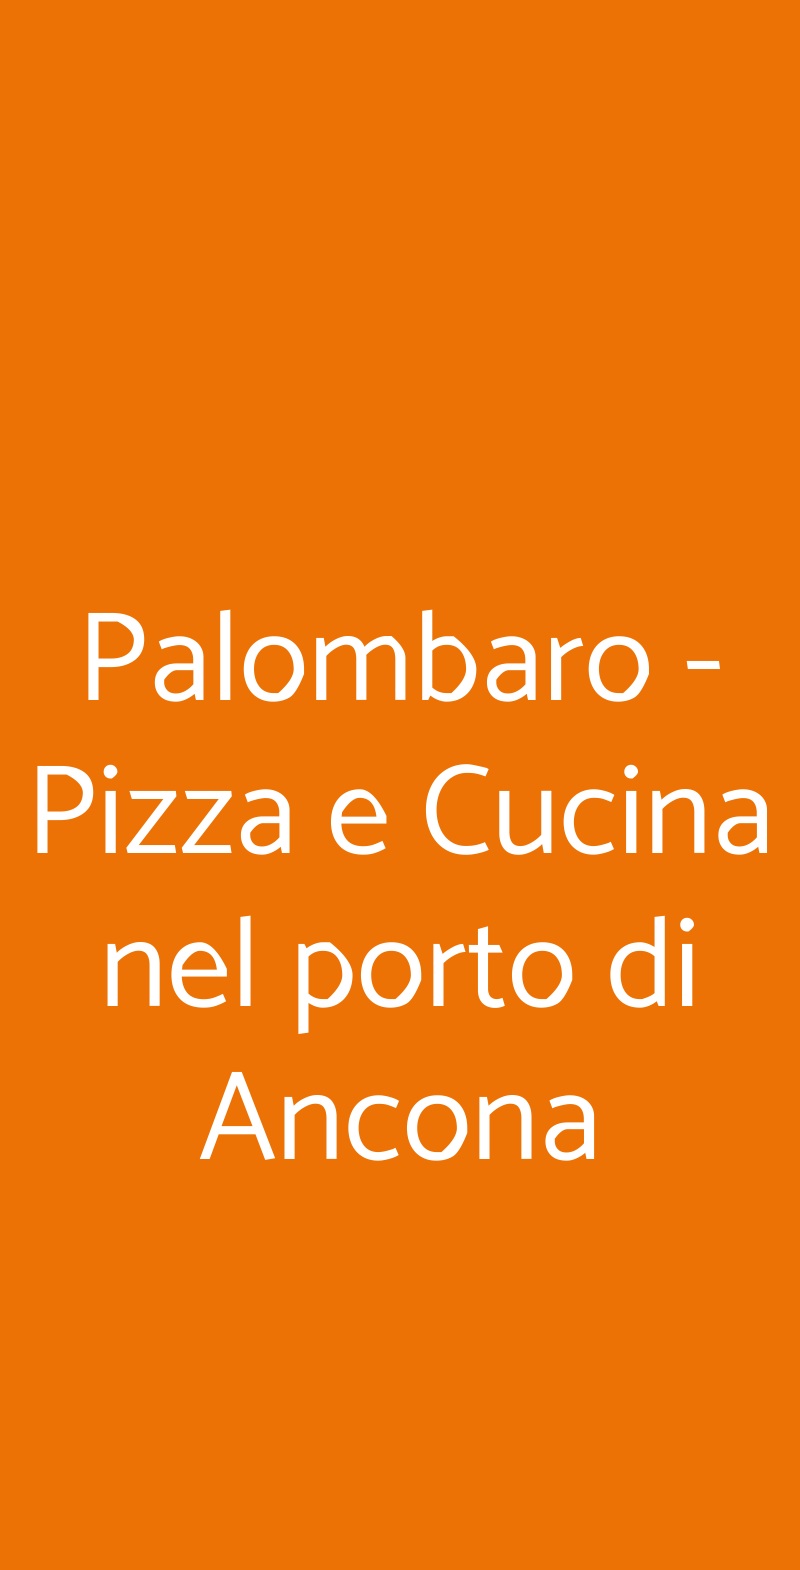 Palombaro - Pizza e Cucina nel porto di Ancona Ancona menù 1 pagina